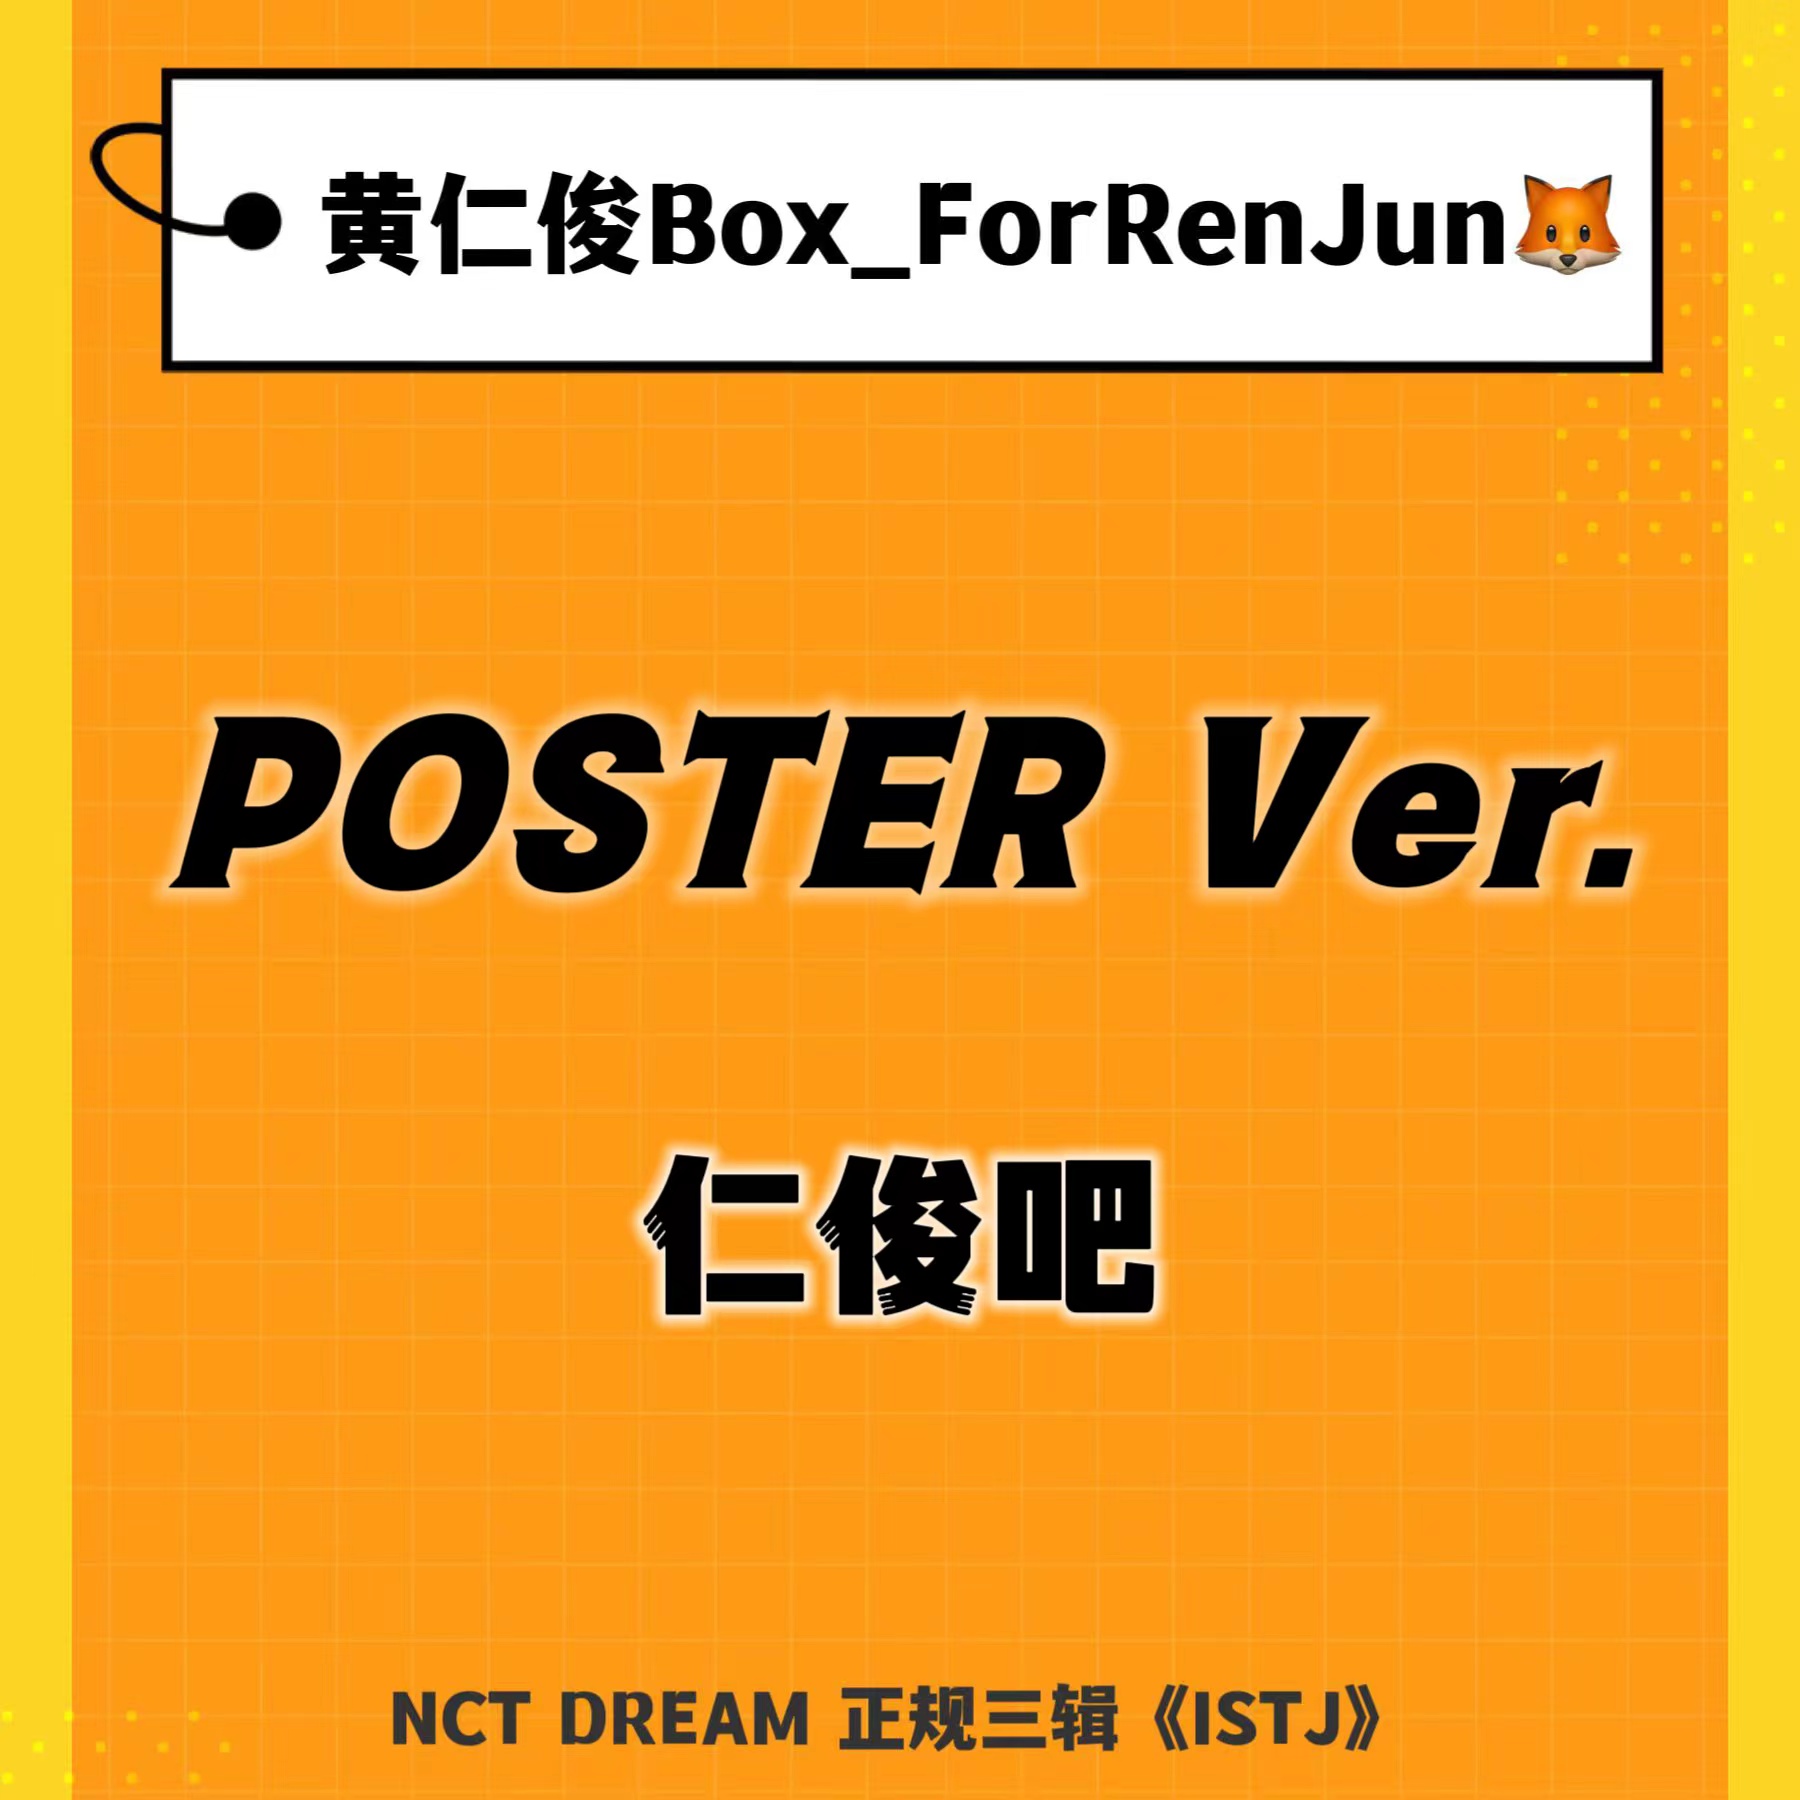 [全款 裸专] NCT DREAM - 正规3辑 [ISTJ] (Poster Ver.) (随机版本)_黄仁俊吧RenJunBar